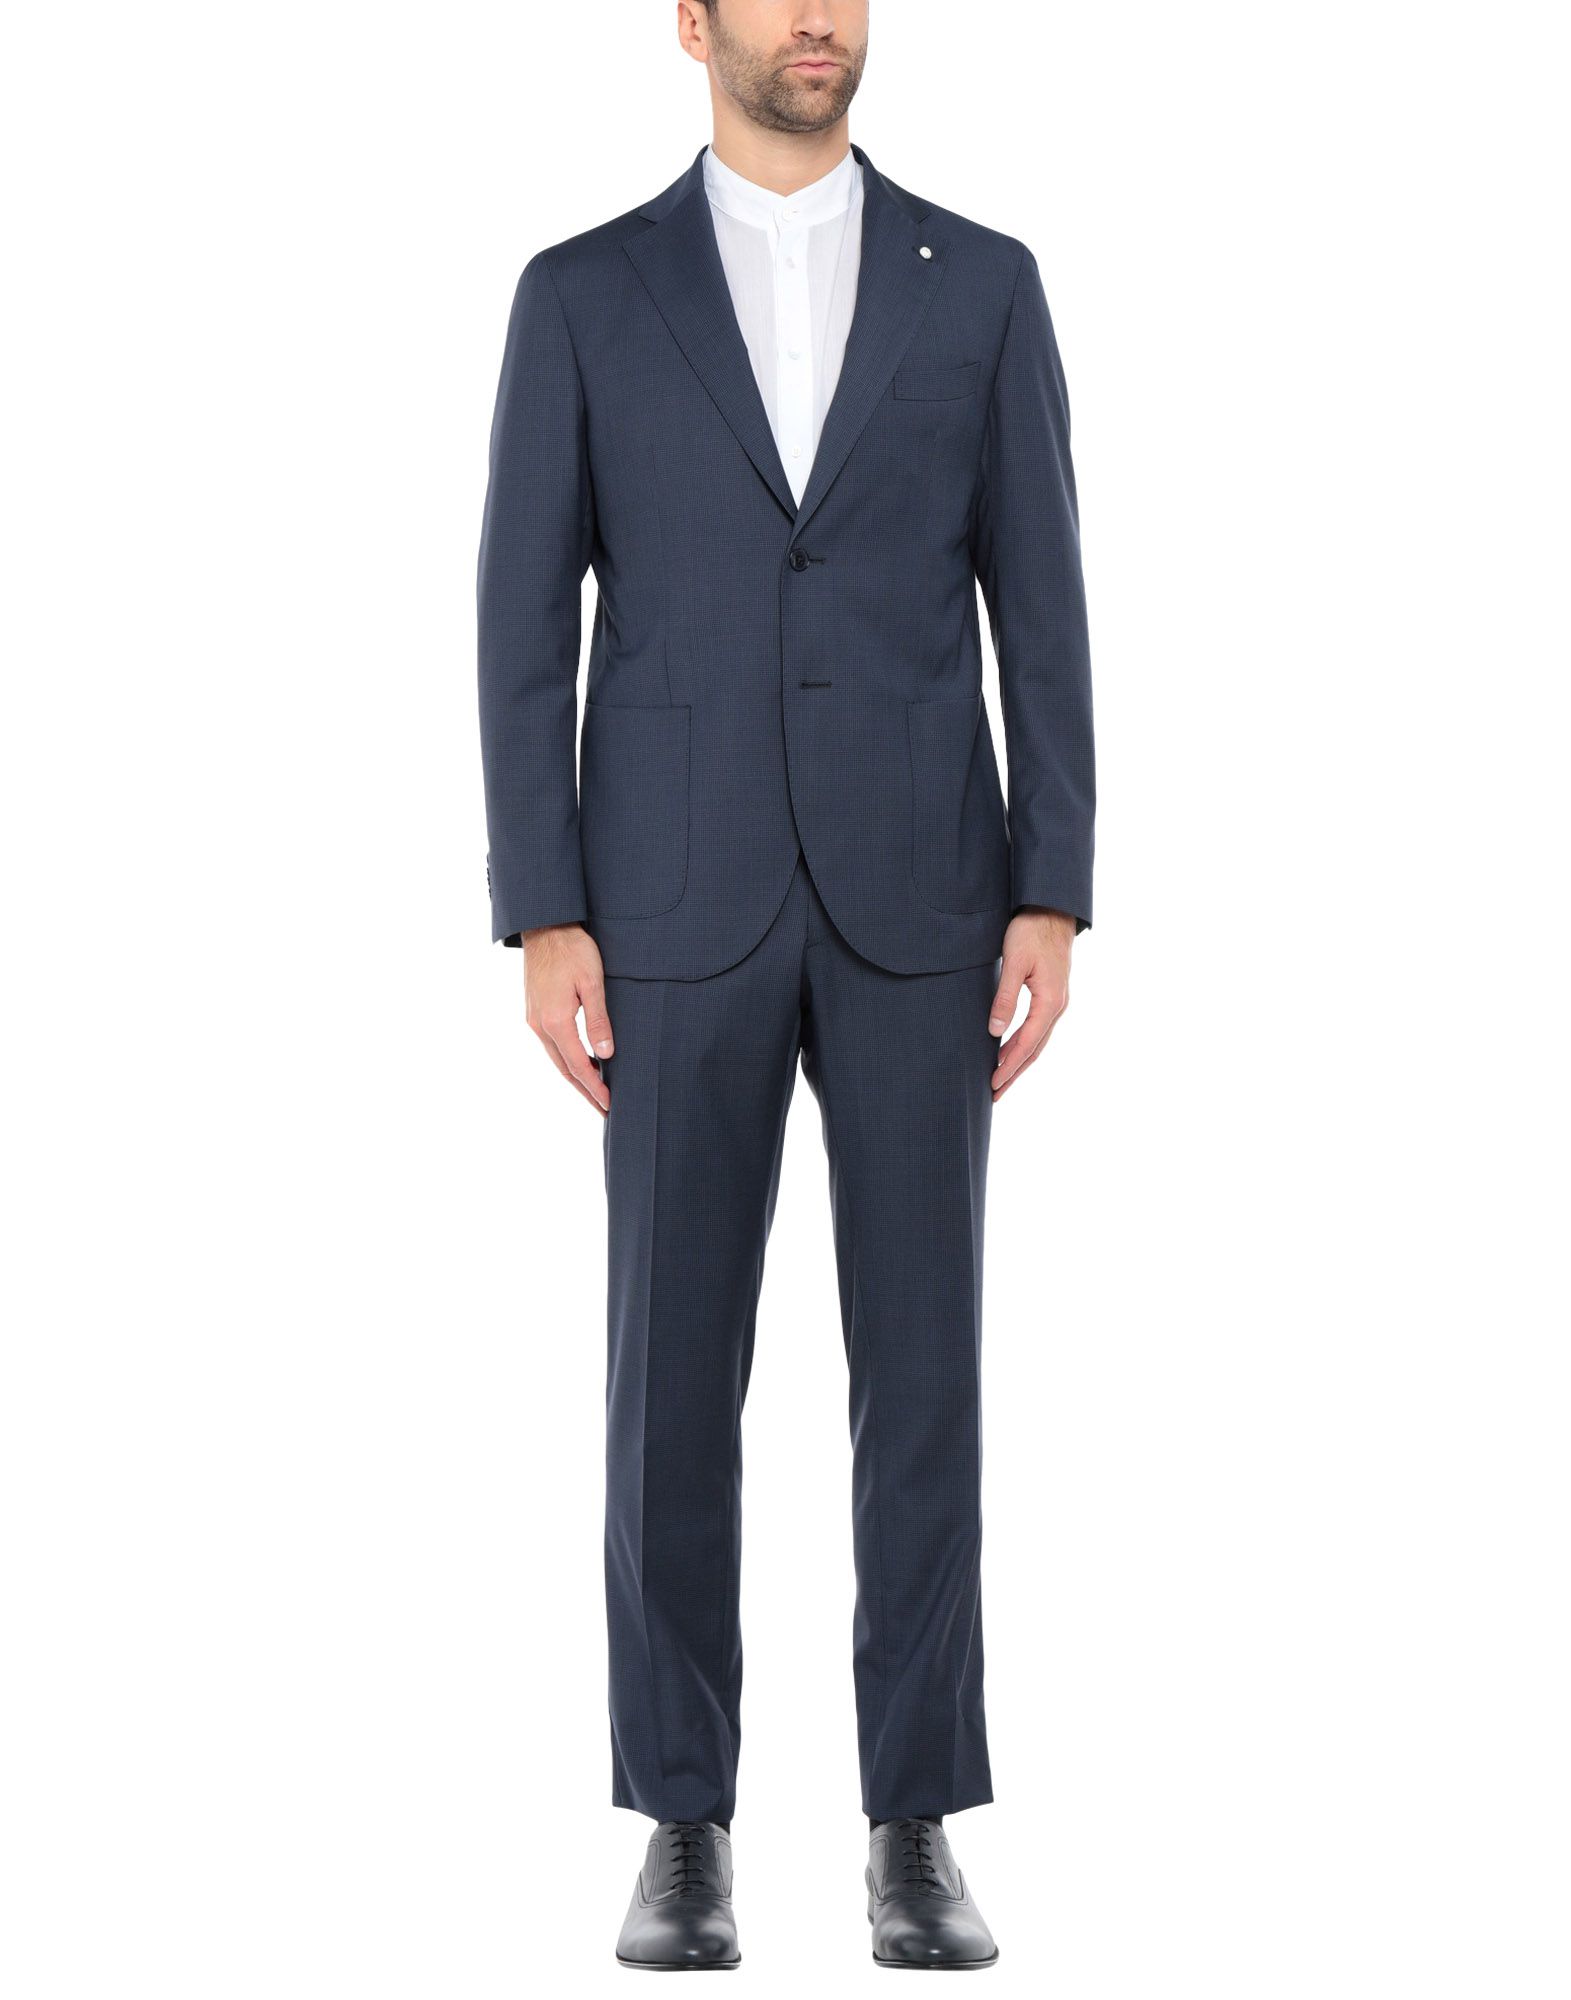 《送料無料》LUIGI BIANCHI Mantova メンズ スーツ ダークブルー 50 スーパー120 ウール 100%